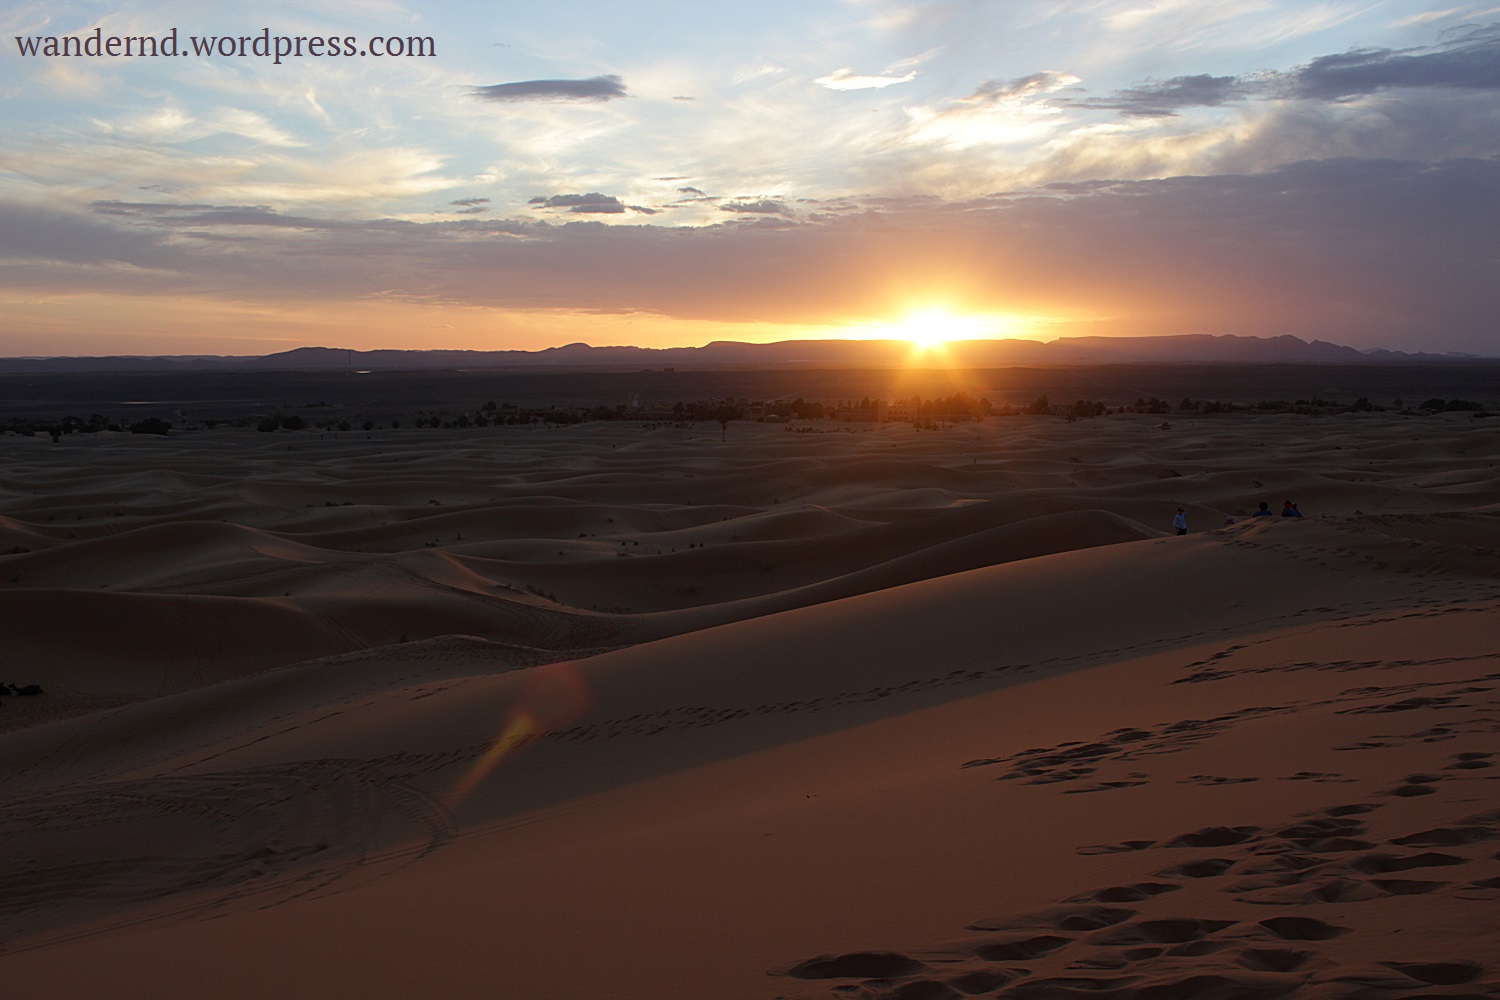 Sonnenuntergang in der Wüste - check ✓